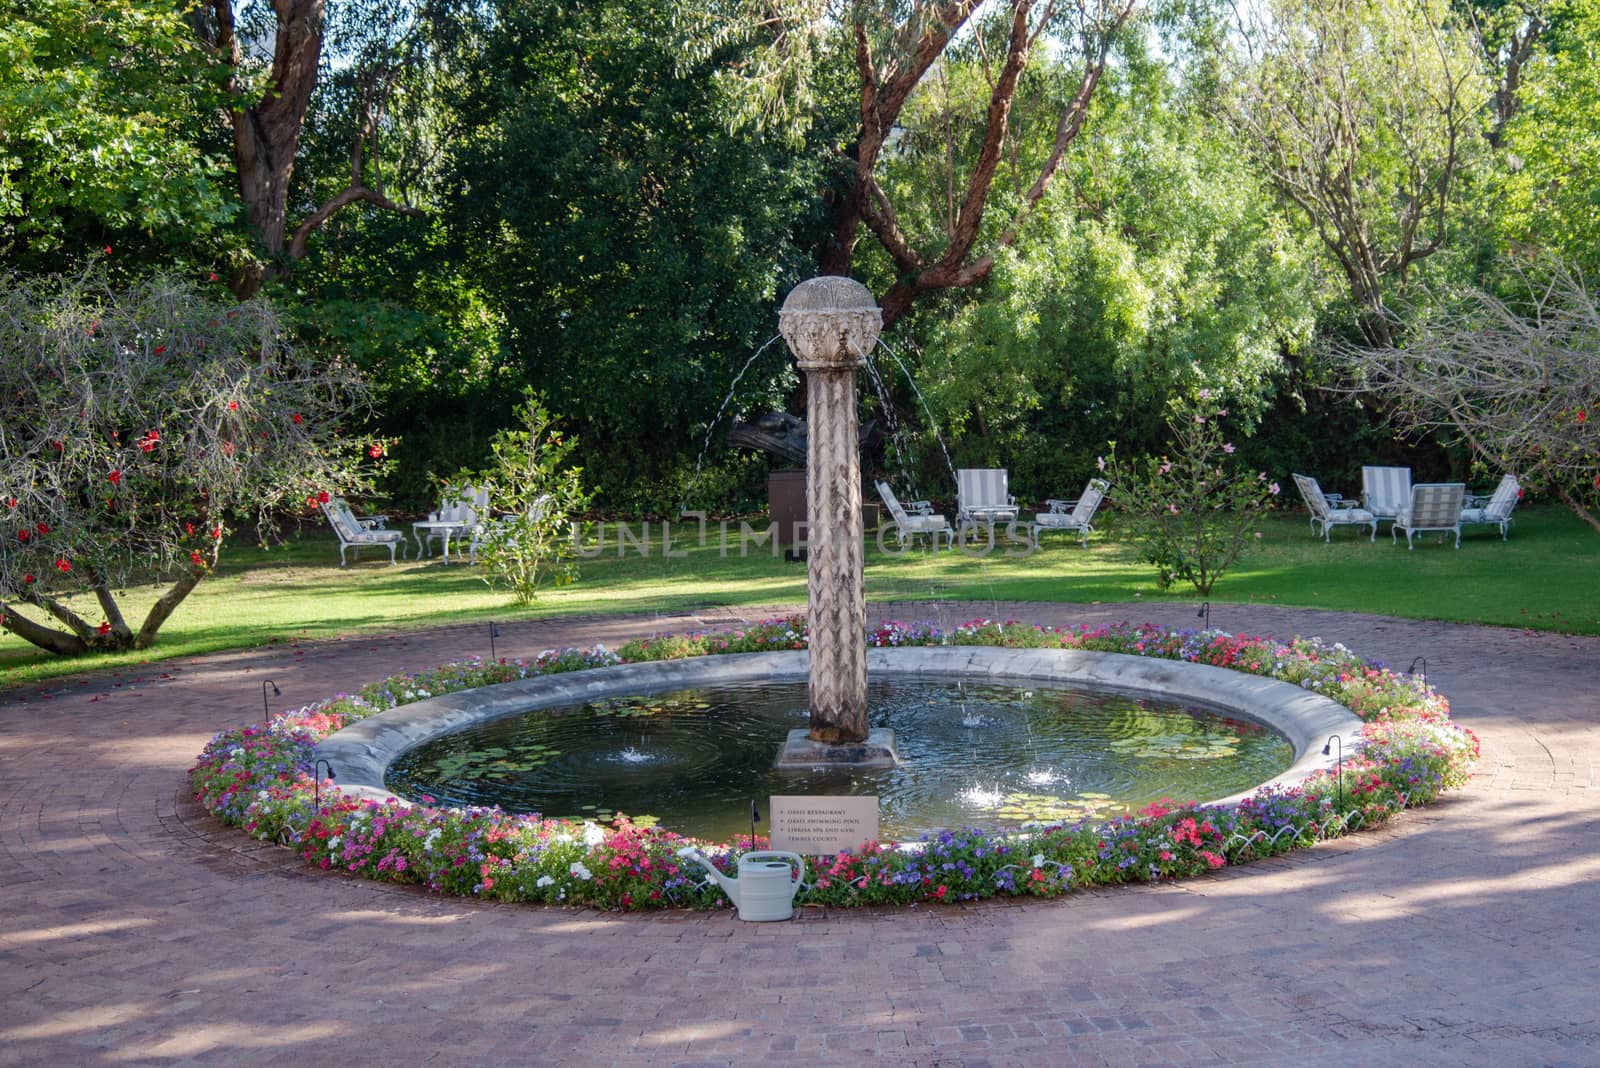 Photo of a circular fountain in a South African Garden